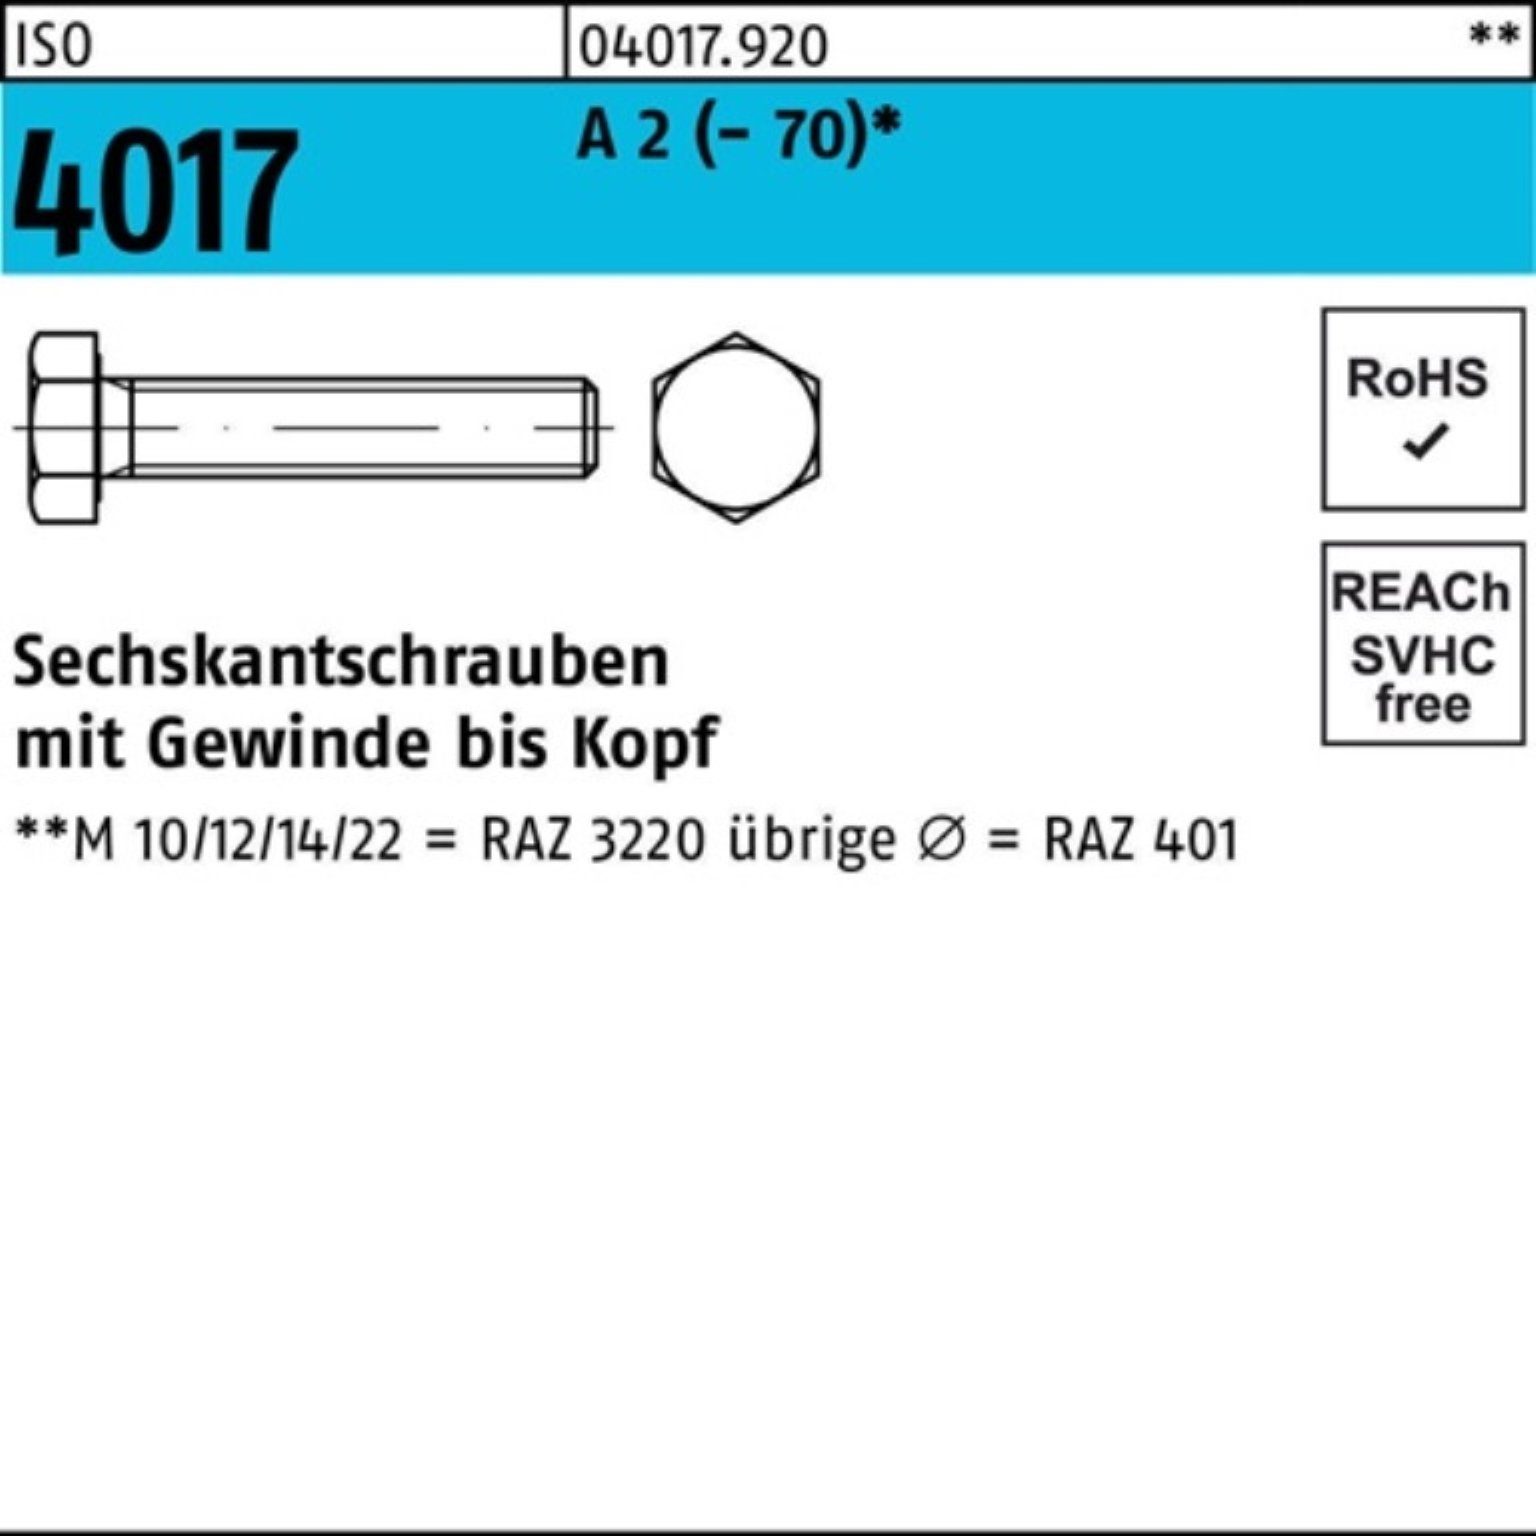 Bufab Sechskantschraube 100er 4017 10 2 Sechskantschraube 100 M5x Pack ISO Stück VG (70) A